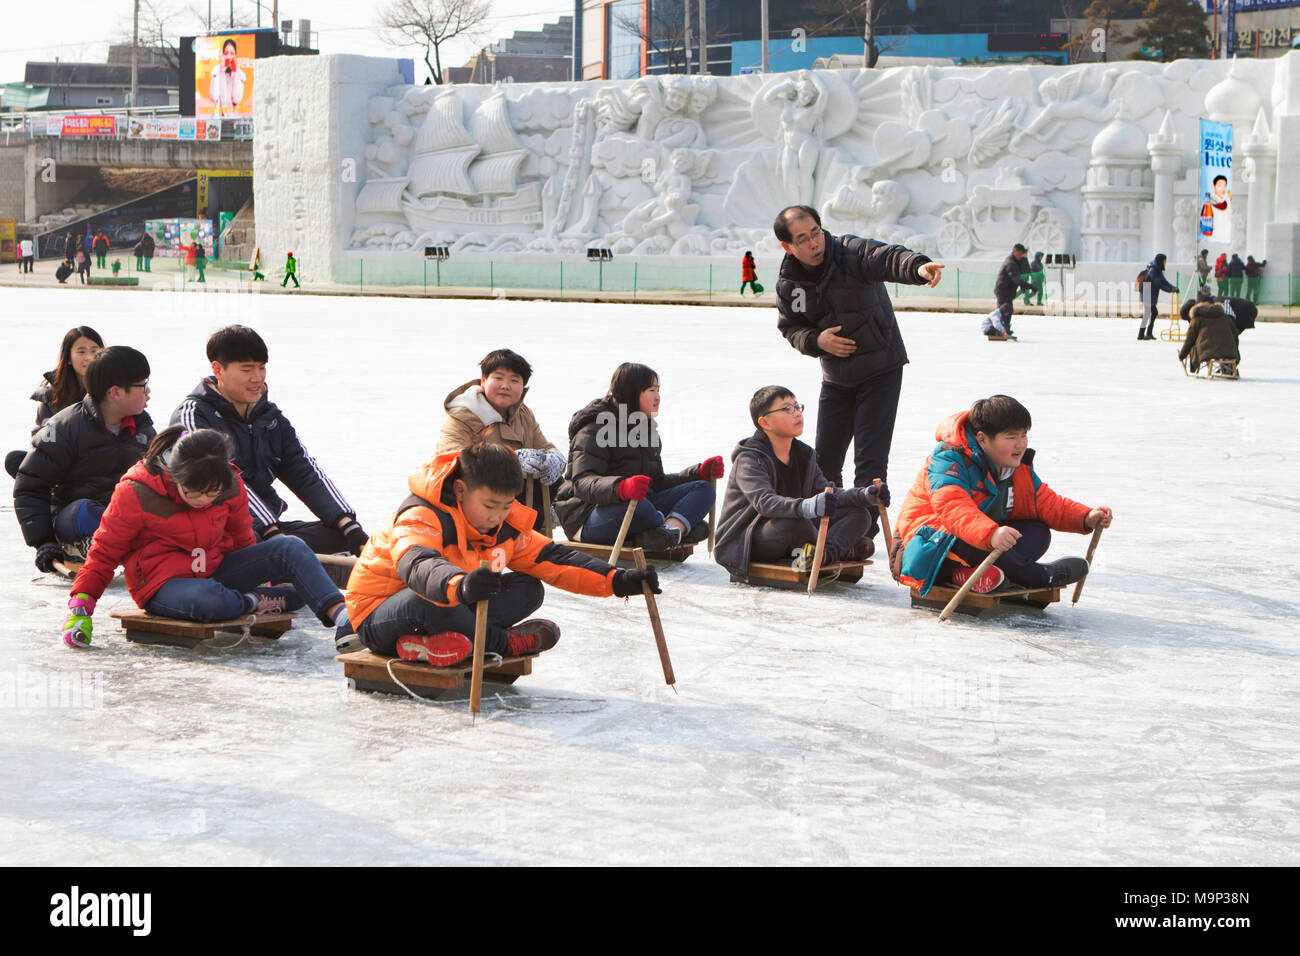 Un gruppo della Corea del Sud a scuola i bambini stanno facendo una concorrenza di sleddog. Il Hwacheon Sancheoneo Festival di ghiaccio è una tradizione per il popolo coreano. Ogni anno nel mese di gennaio la folla si riuniranno presso il fiume congelato per celebrare il freddo e la neve dell'inverno. Attrazione principale è la pesca sul ghiaccio. Giovani e vecchi attendere pazientemente su un piccolo buco nel ghiaccio per una trota di mordere. In tende possono lasciare il pesce grigliato dopo che loro sono mangiati. Tra le altre attività sono corse in slittino e pattinaggio sul ghiaccio. La vicina regione Pyeongchang ospiterà le Olimpiadi Invernali nel febbraio 2018. Foto Stock